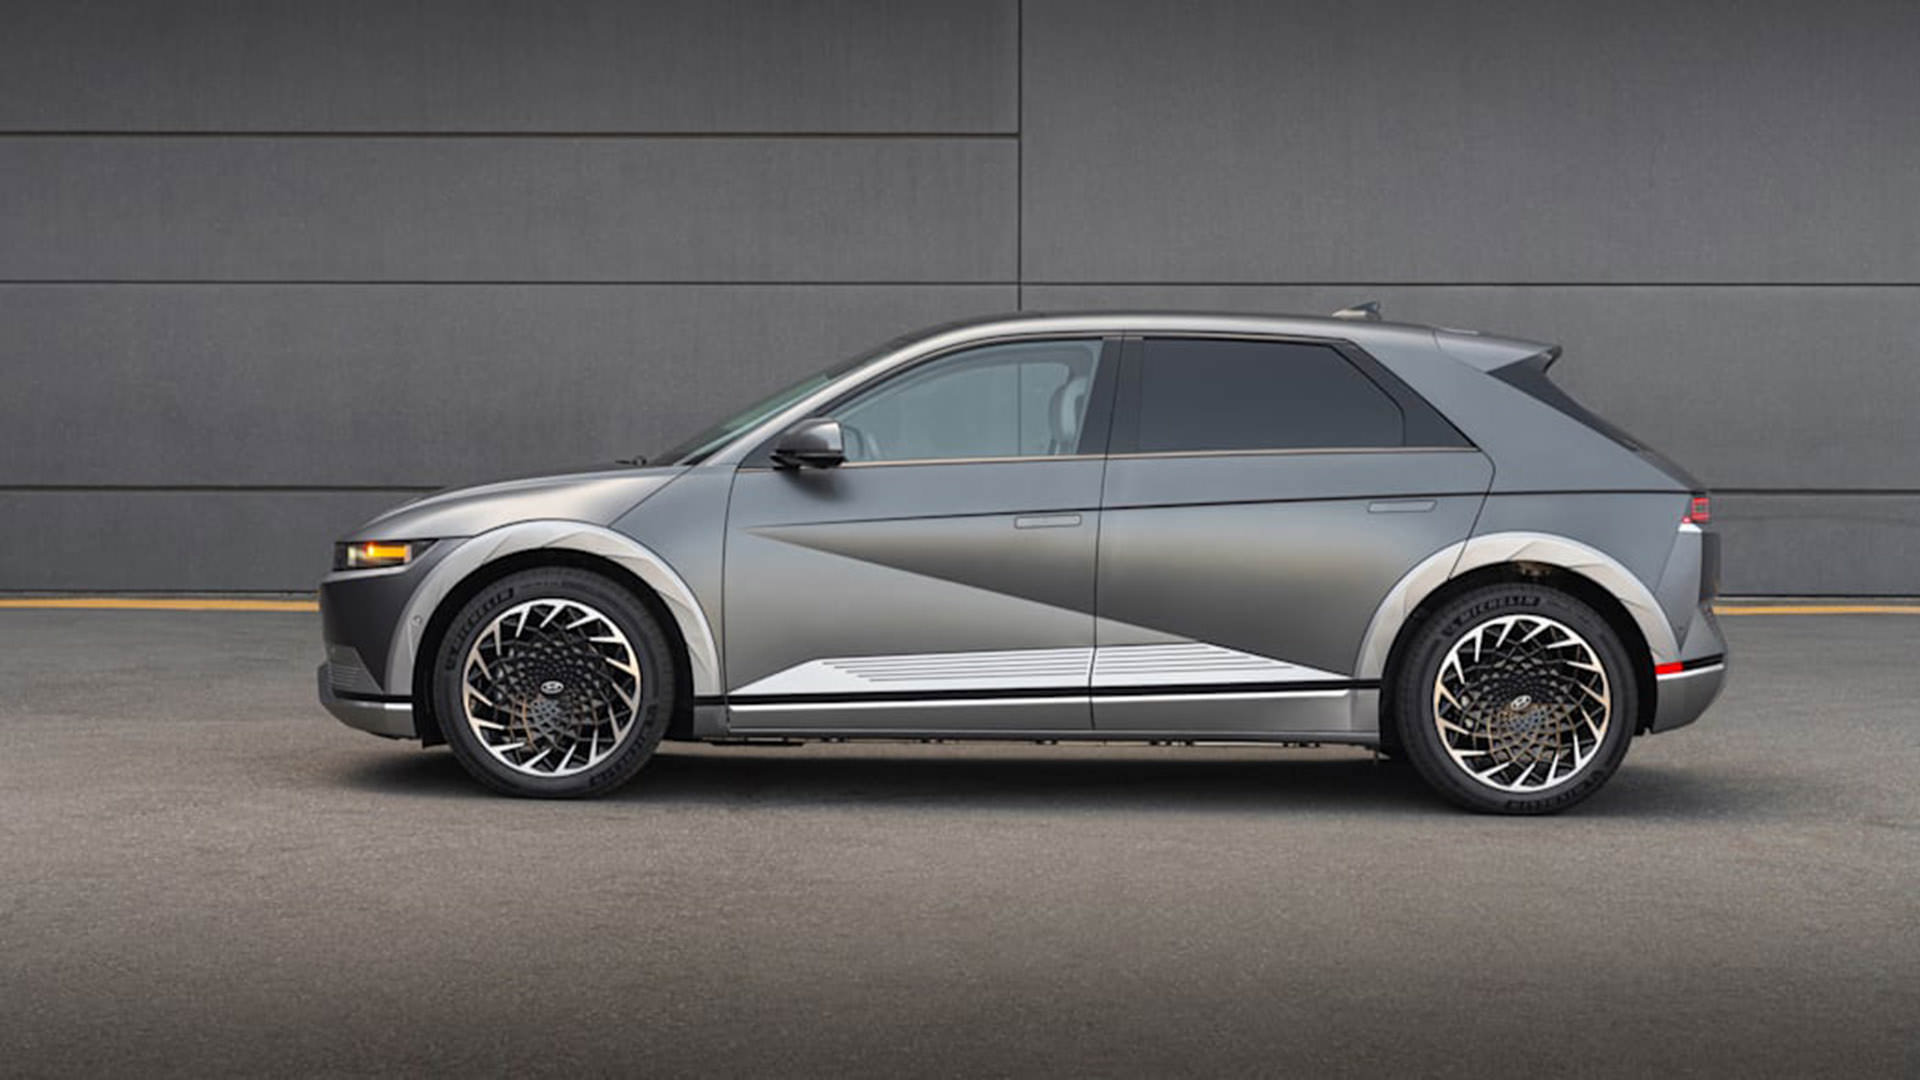 نمای جانبی کراس اور برقی هیوندای آیونیک 5 / 2022 Hyundai Ioniq 5 electric crossover خاکستری رنگ